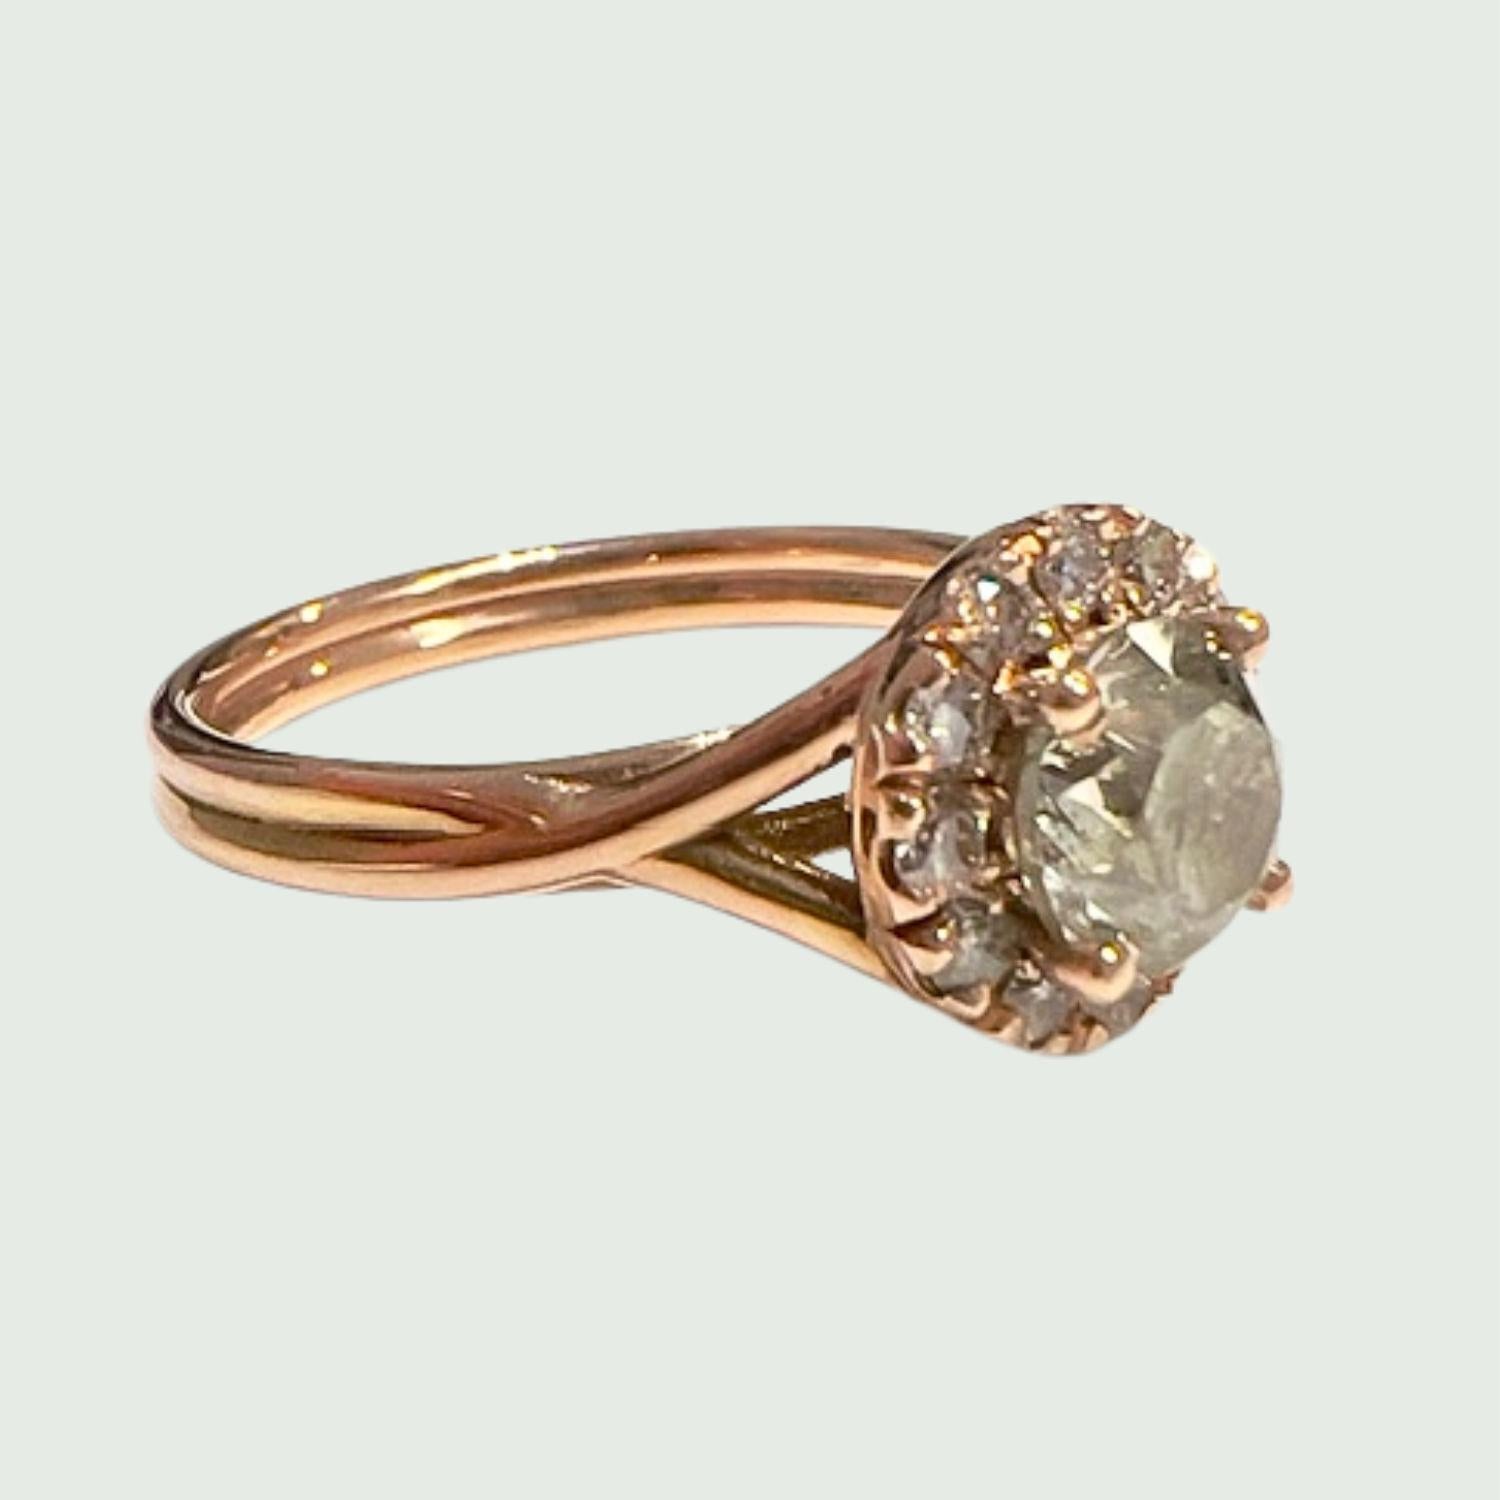 Entdecken Sie den Ring im zeitgenössischen Design, der alle Herzen erobern wird. Dieser elegante Ring ist aus 18-karätigem Gelbgold gefertigt und mit einem schillernden  Ein Diamant im Brillantschliff von 0,80 Karat, der in der Mitte durch Diamanten